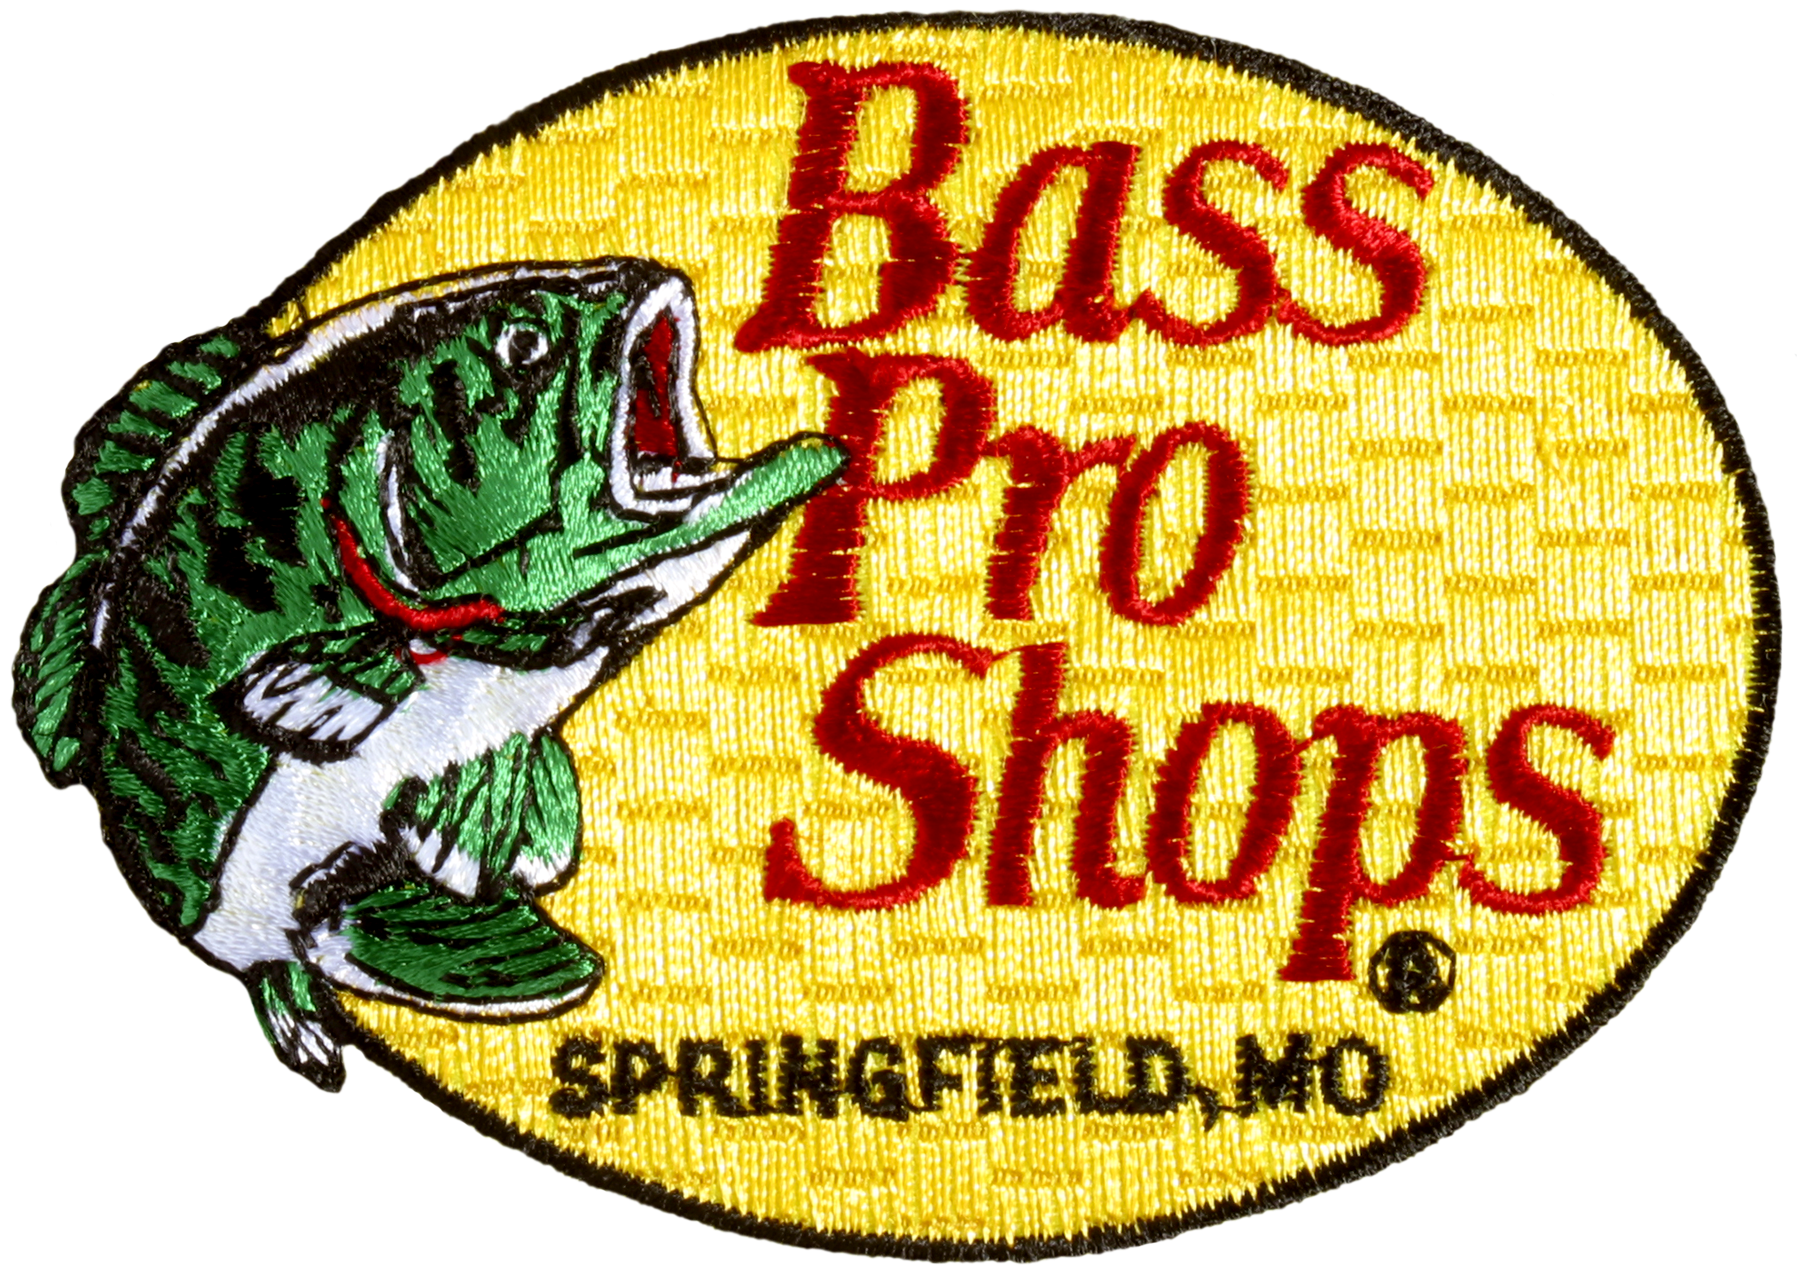 Bass Pro Shops Patch